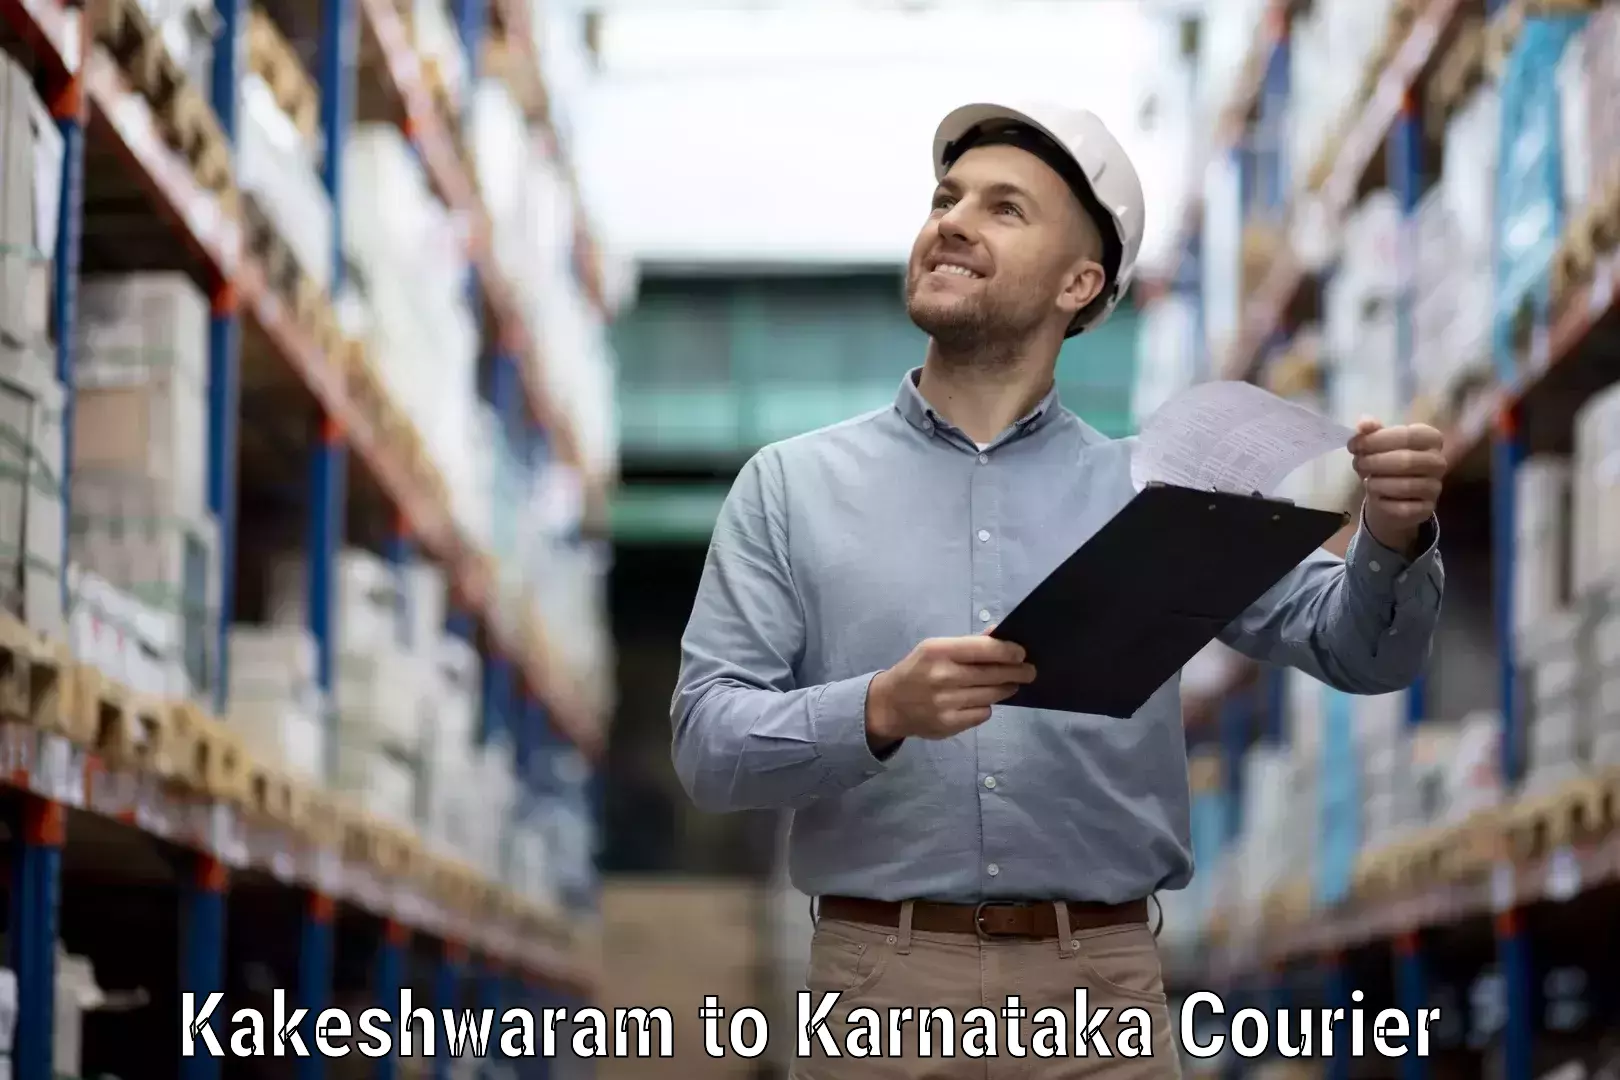 Next-day delivery options Kakeshwaram to Karnataka